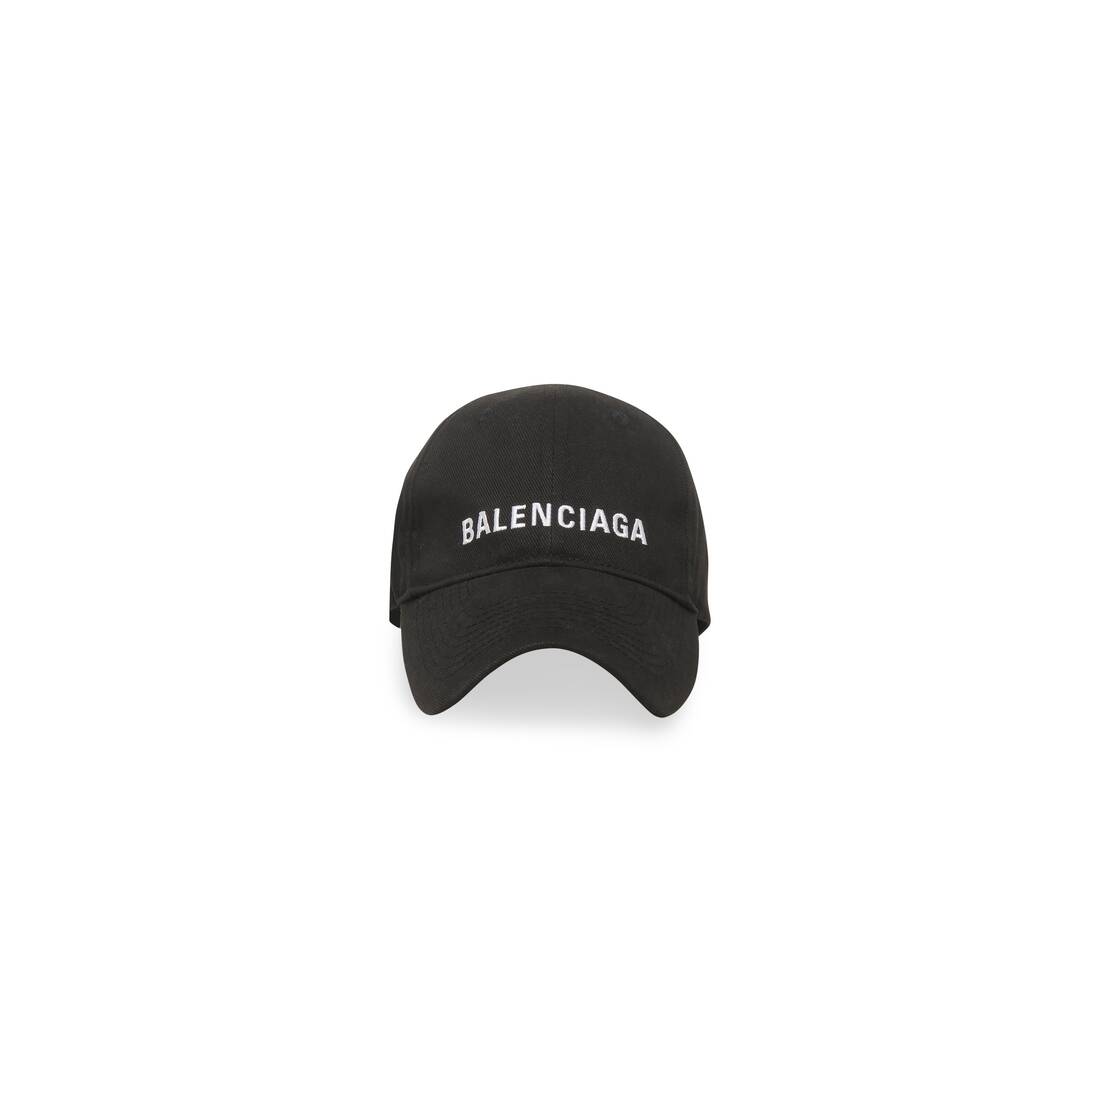 Balenciaga Cap in Black/white